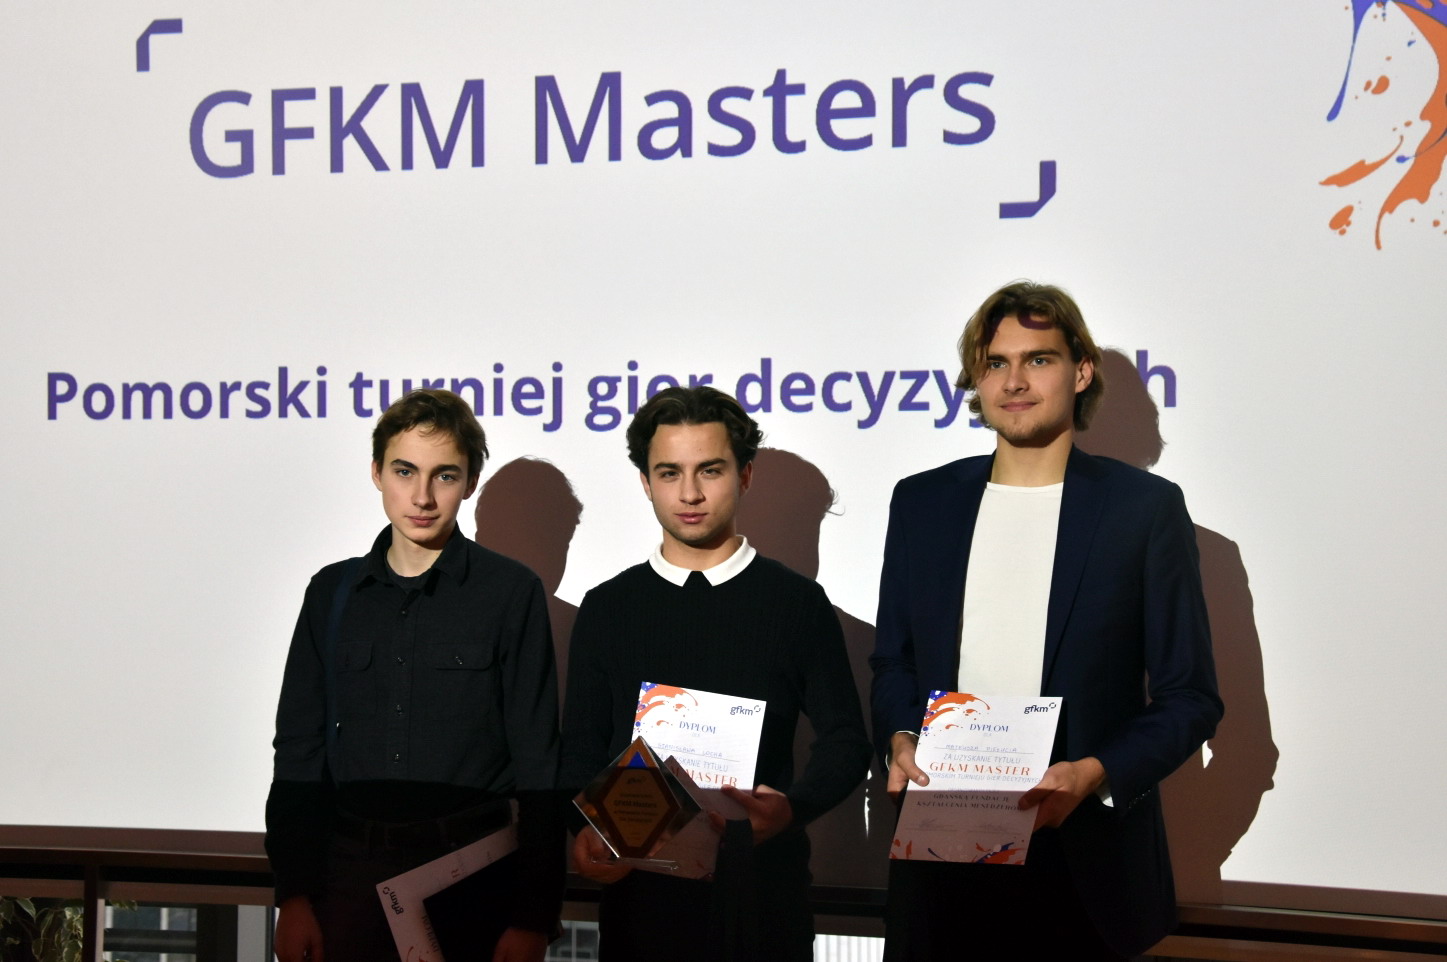 GFKM Masters 2021, laureaci. Fot. mat. prasowe Gdańskiej Fundacji Kształcenia Menedżerów